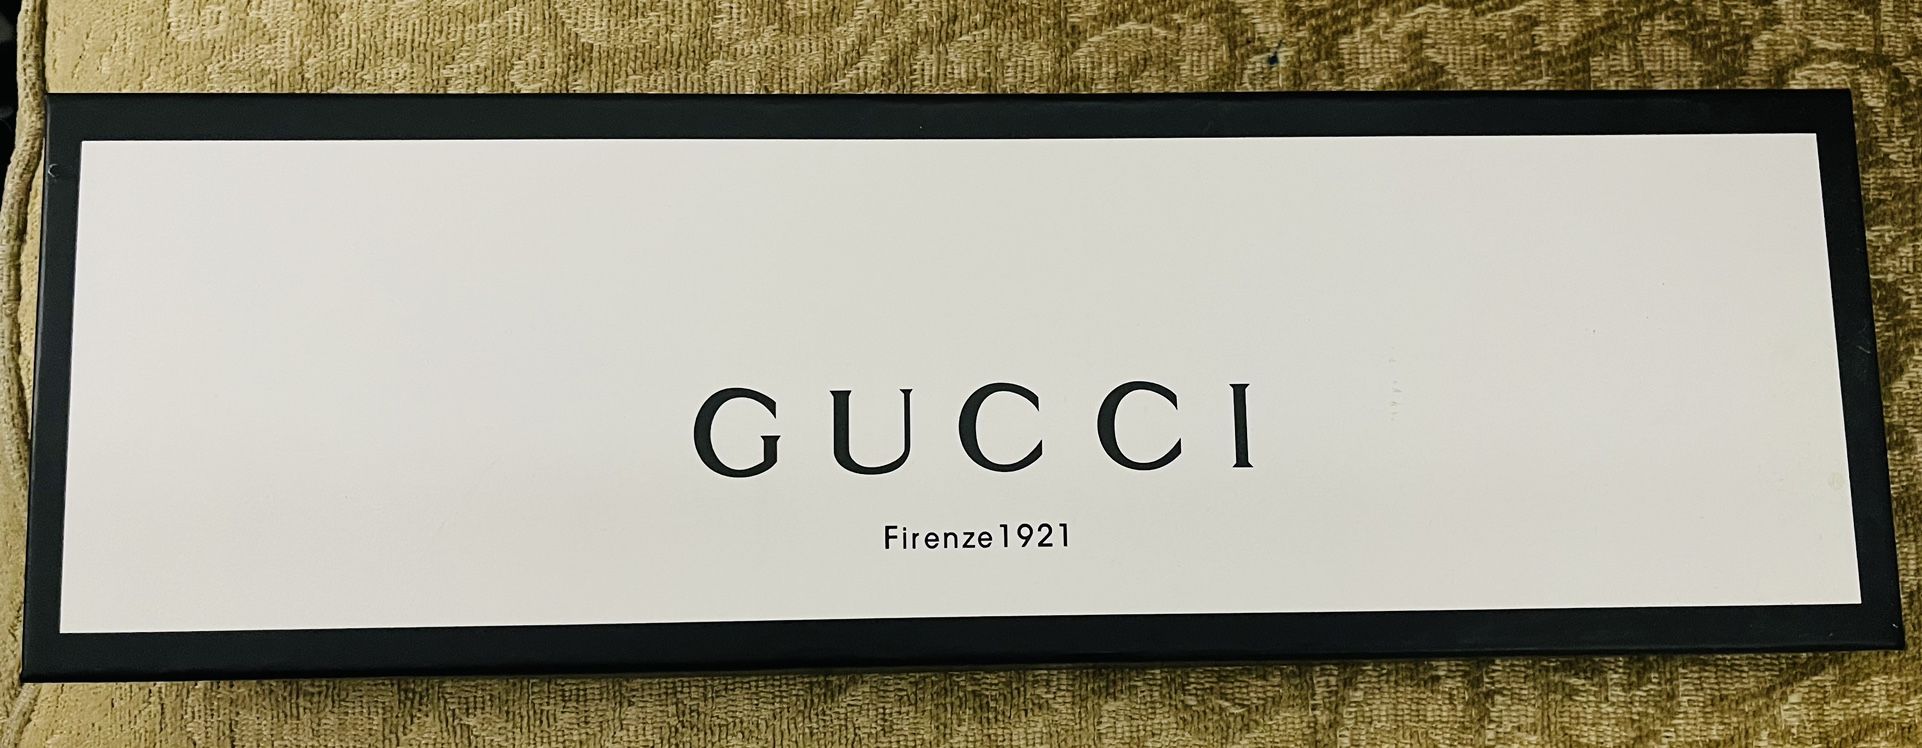 Gucci Box Scarf Empty 